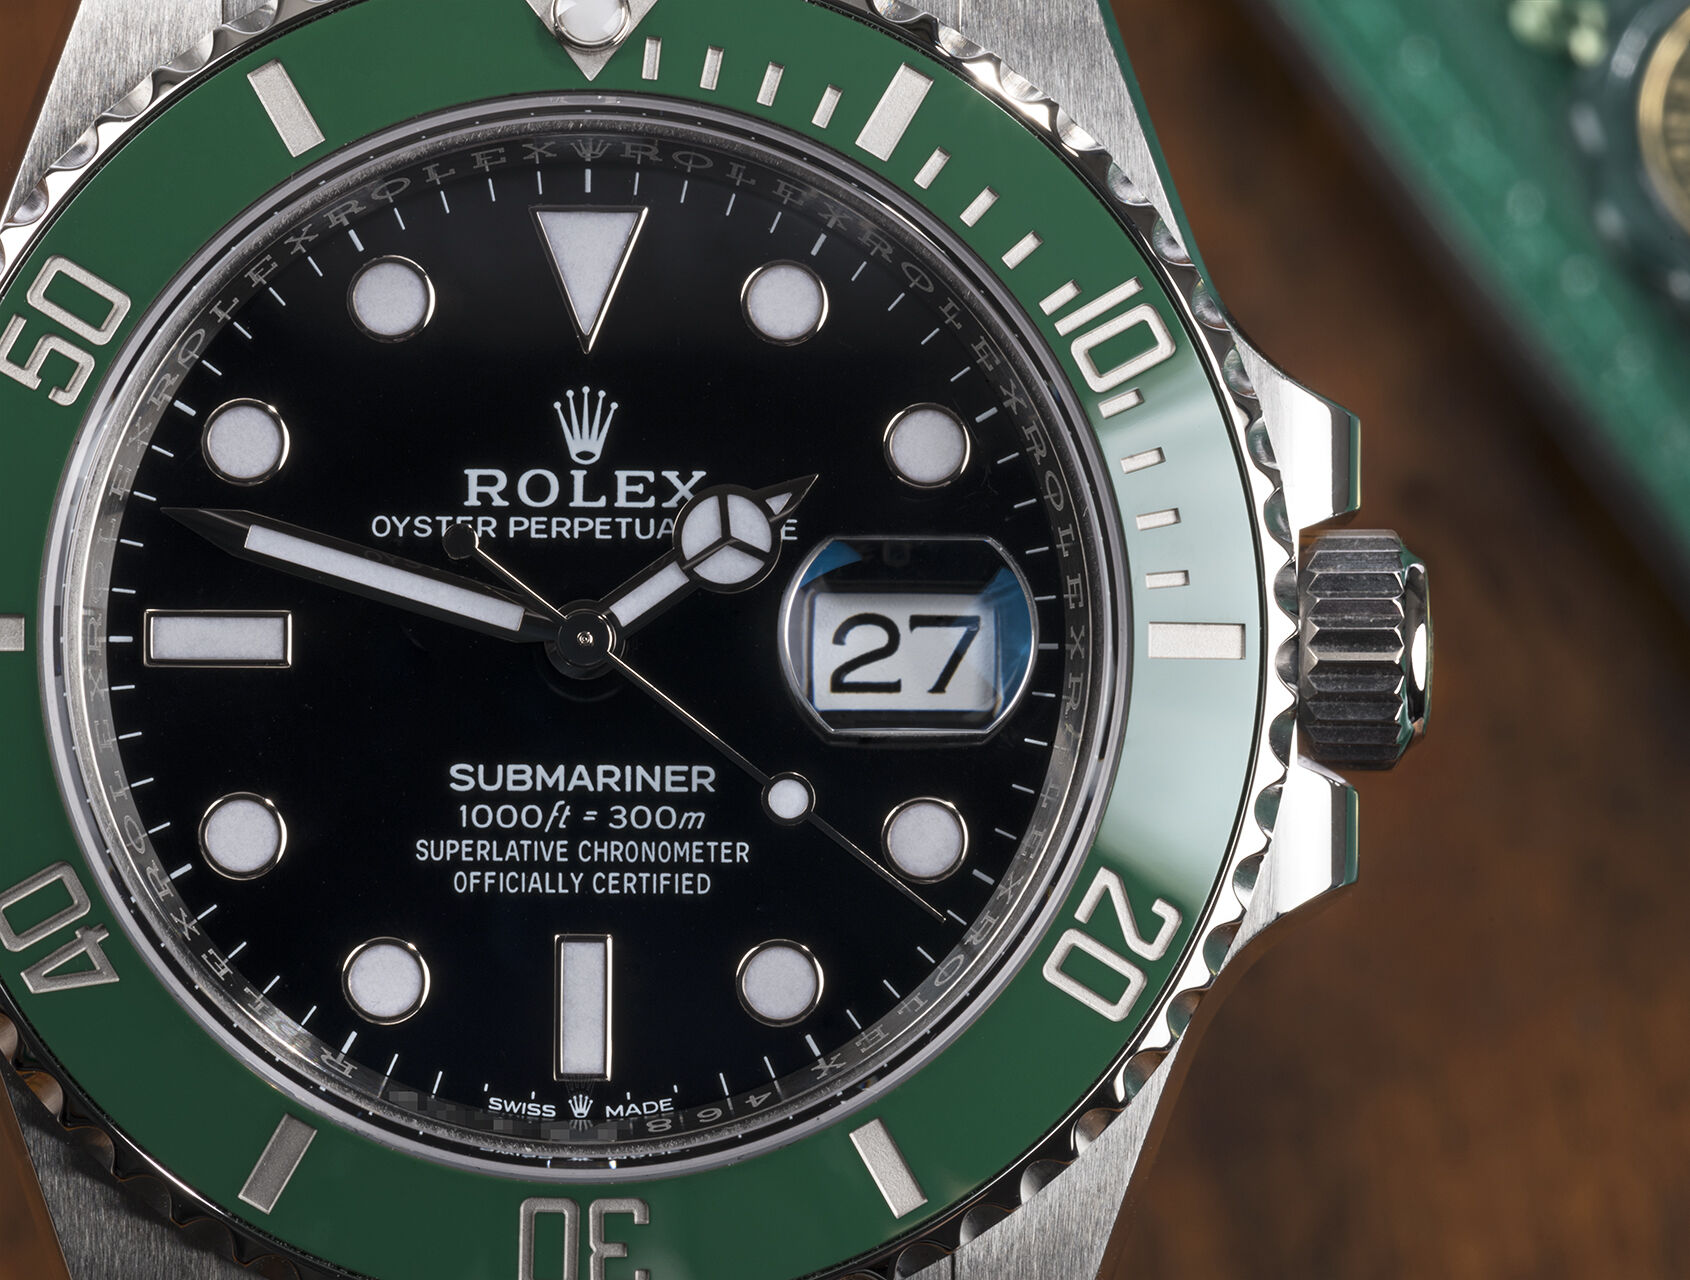 ref 126610LV | 126610LV - Rolex Warranty to 2026 | Rolex Submariner Date